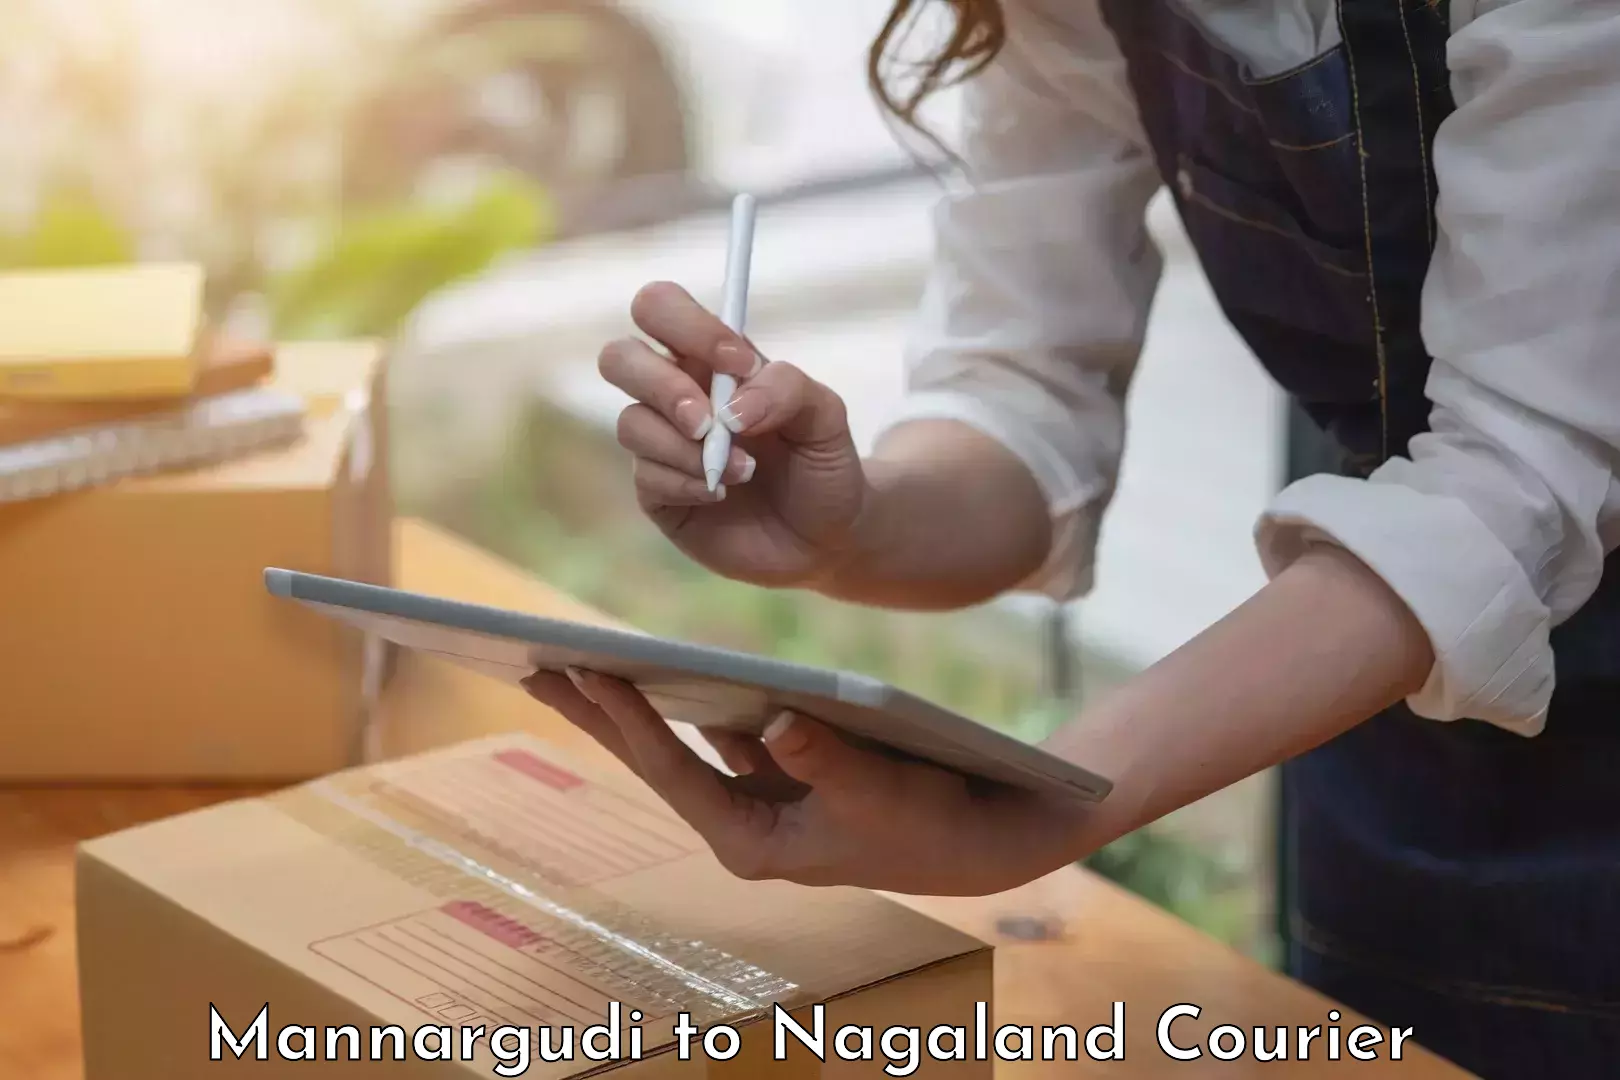 High-quality moving services Mannargudi to Nagaland